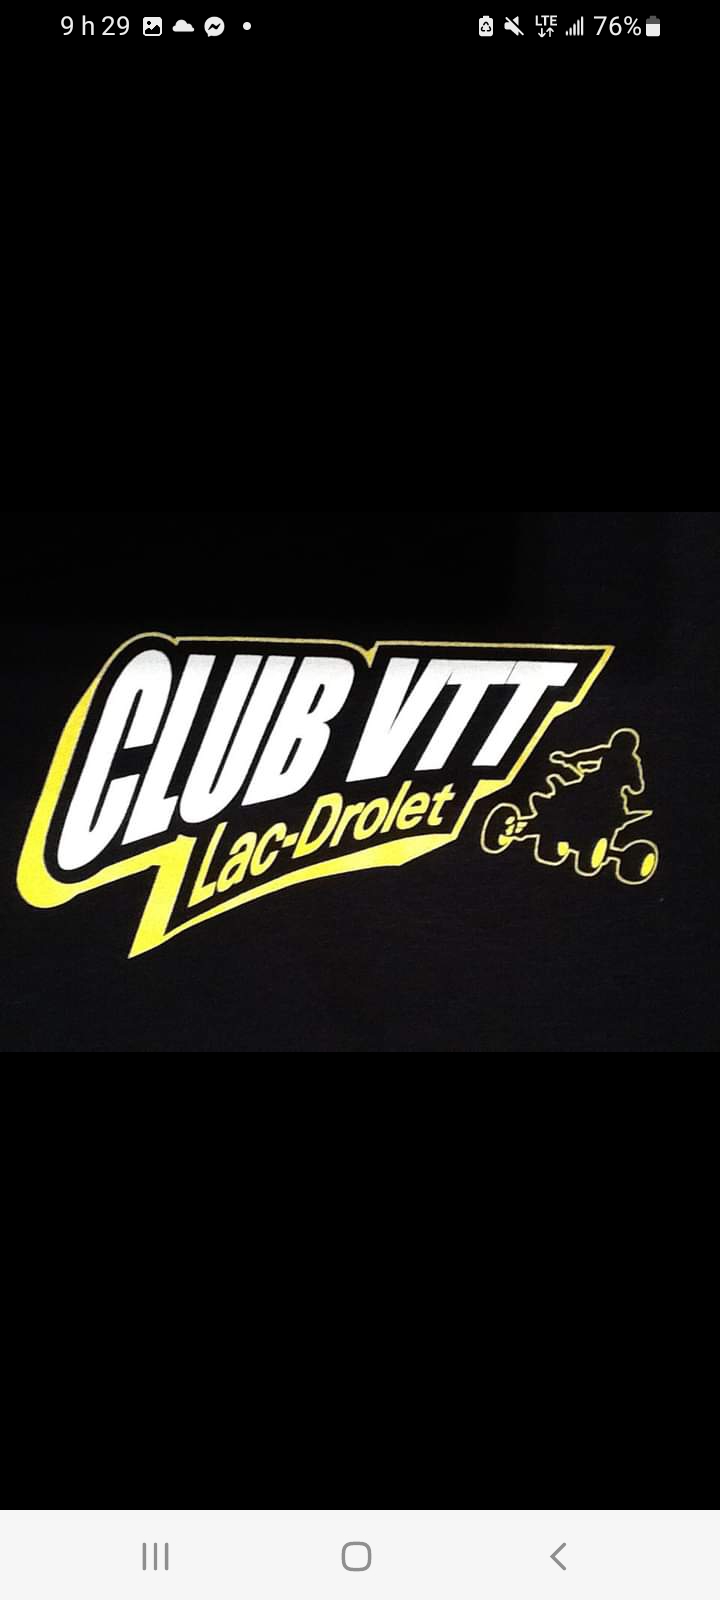 Logo 05-103 Club V.T.T. De Lac-Drolet Inc.